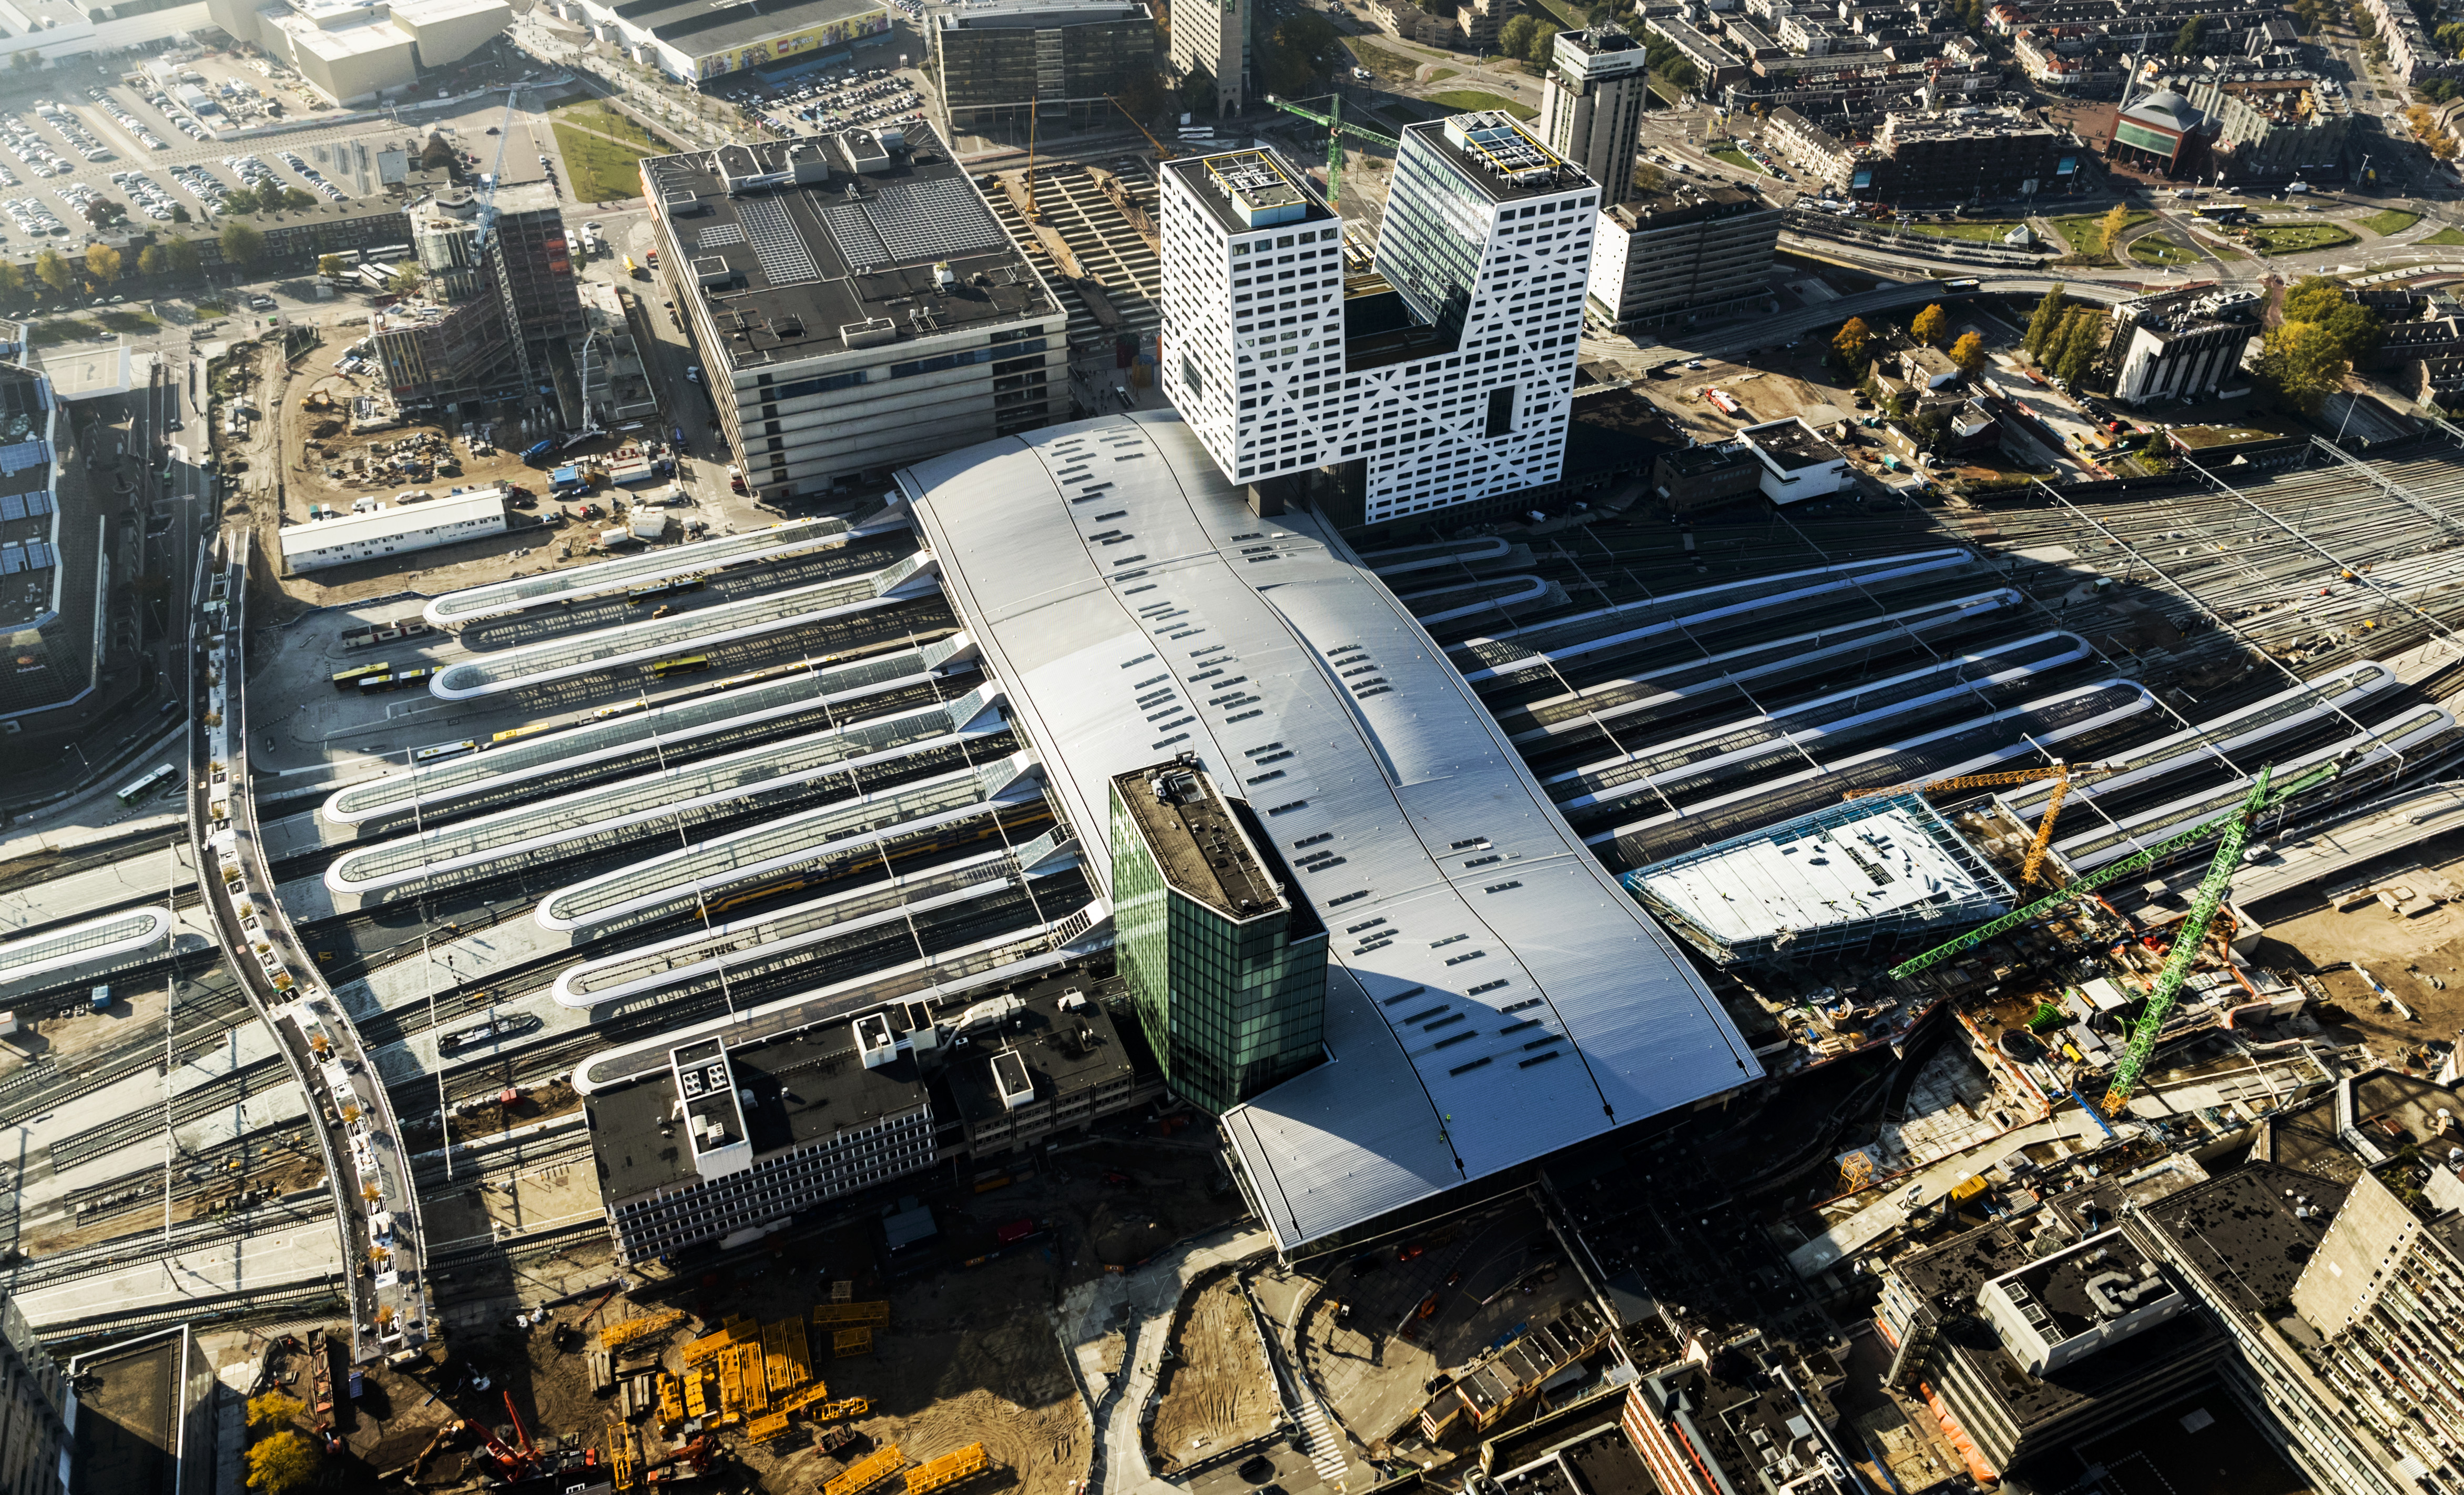 2016-10-21 14:33:53 UTRECHT - Luchtfoto van de spoorvernieuwing rondom treinstation Utrecht Centraal. ANP REMKO DE WAAL